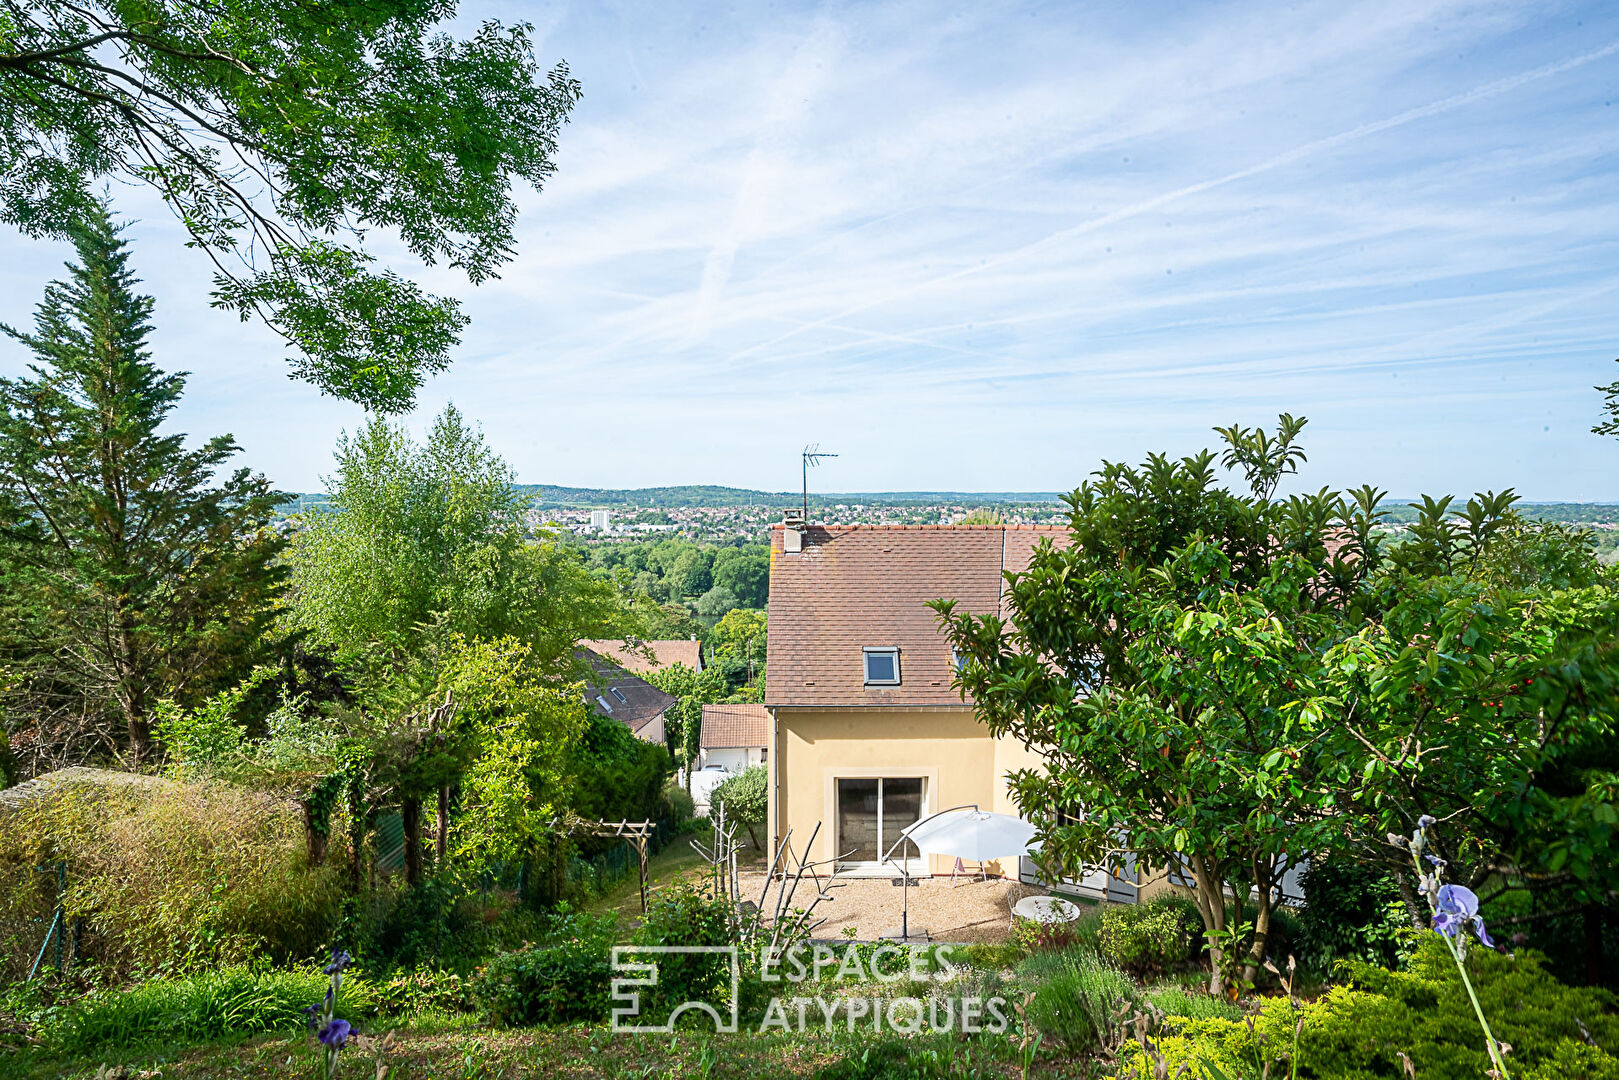 Jolie maison familiale dans son jardin à flanc de colline avec vue Seine